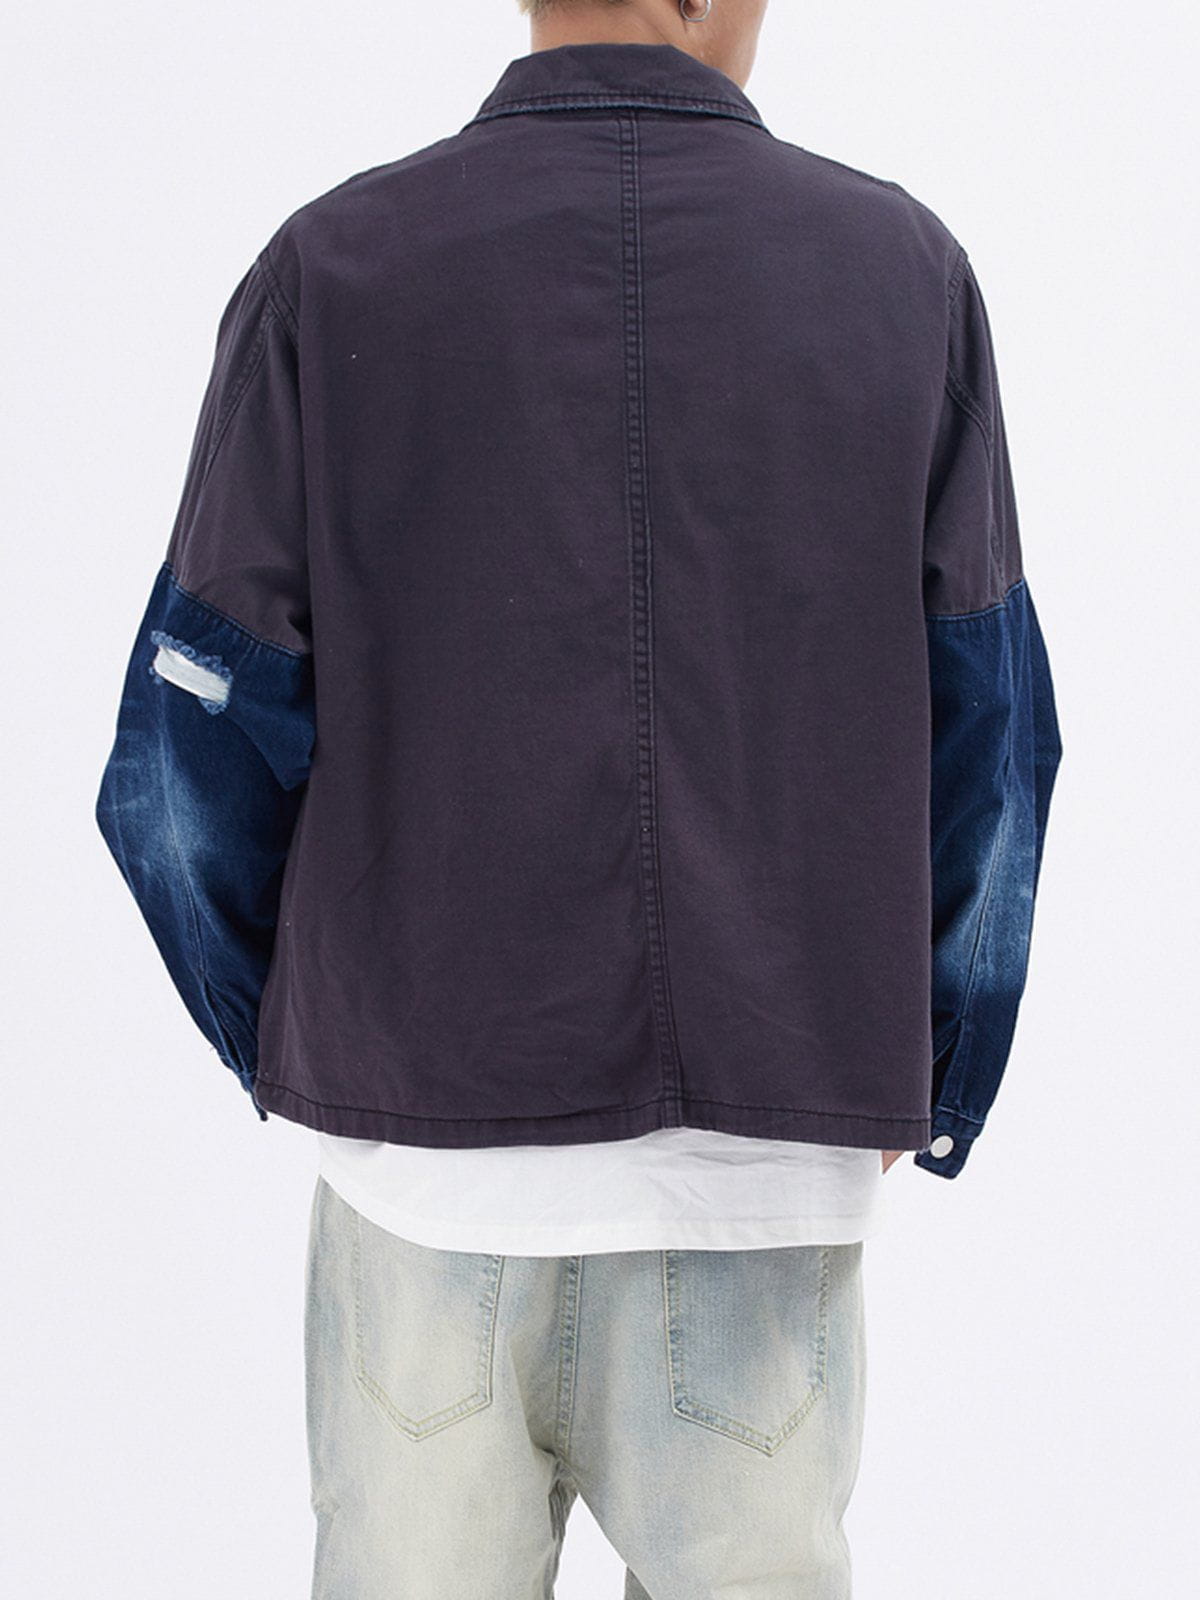 Eprezzy® - Patchwork Multi-pocket Denim Jacket Streetwear Fashion - eprezzy.com